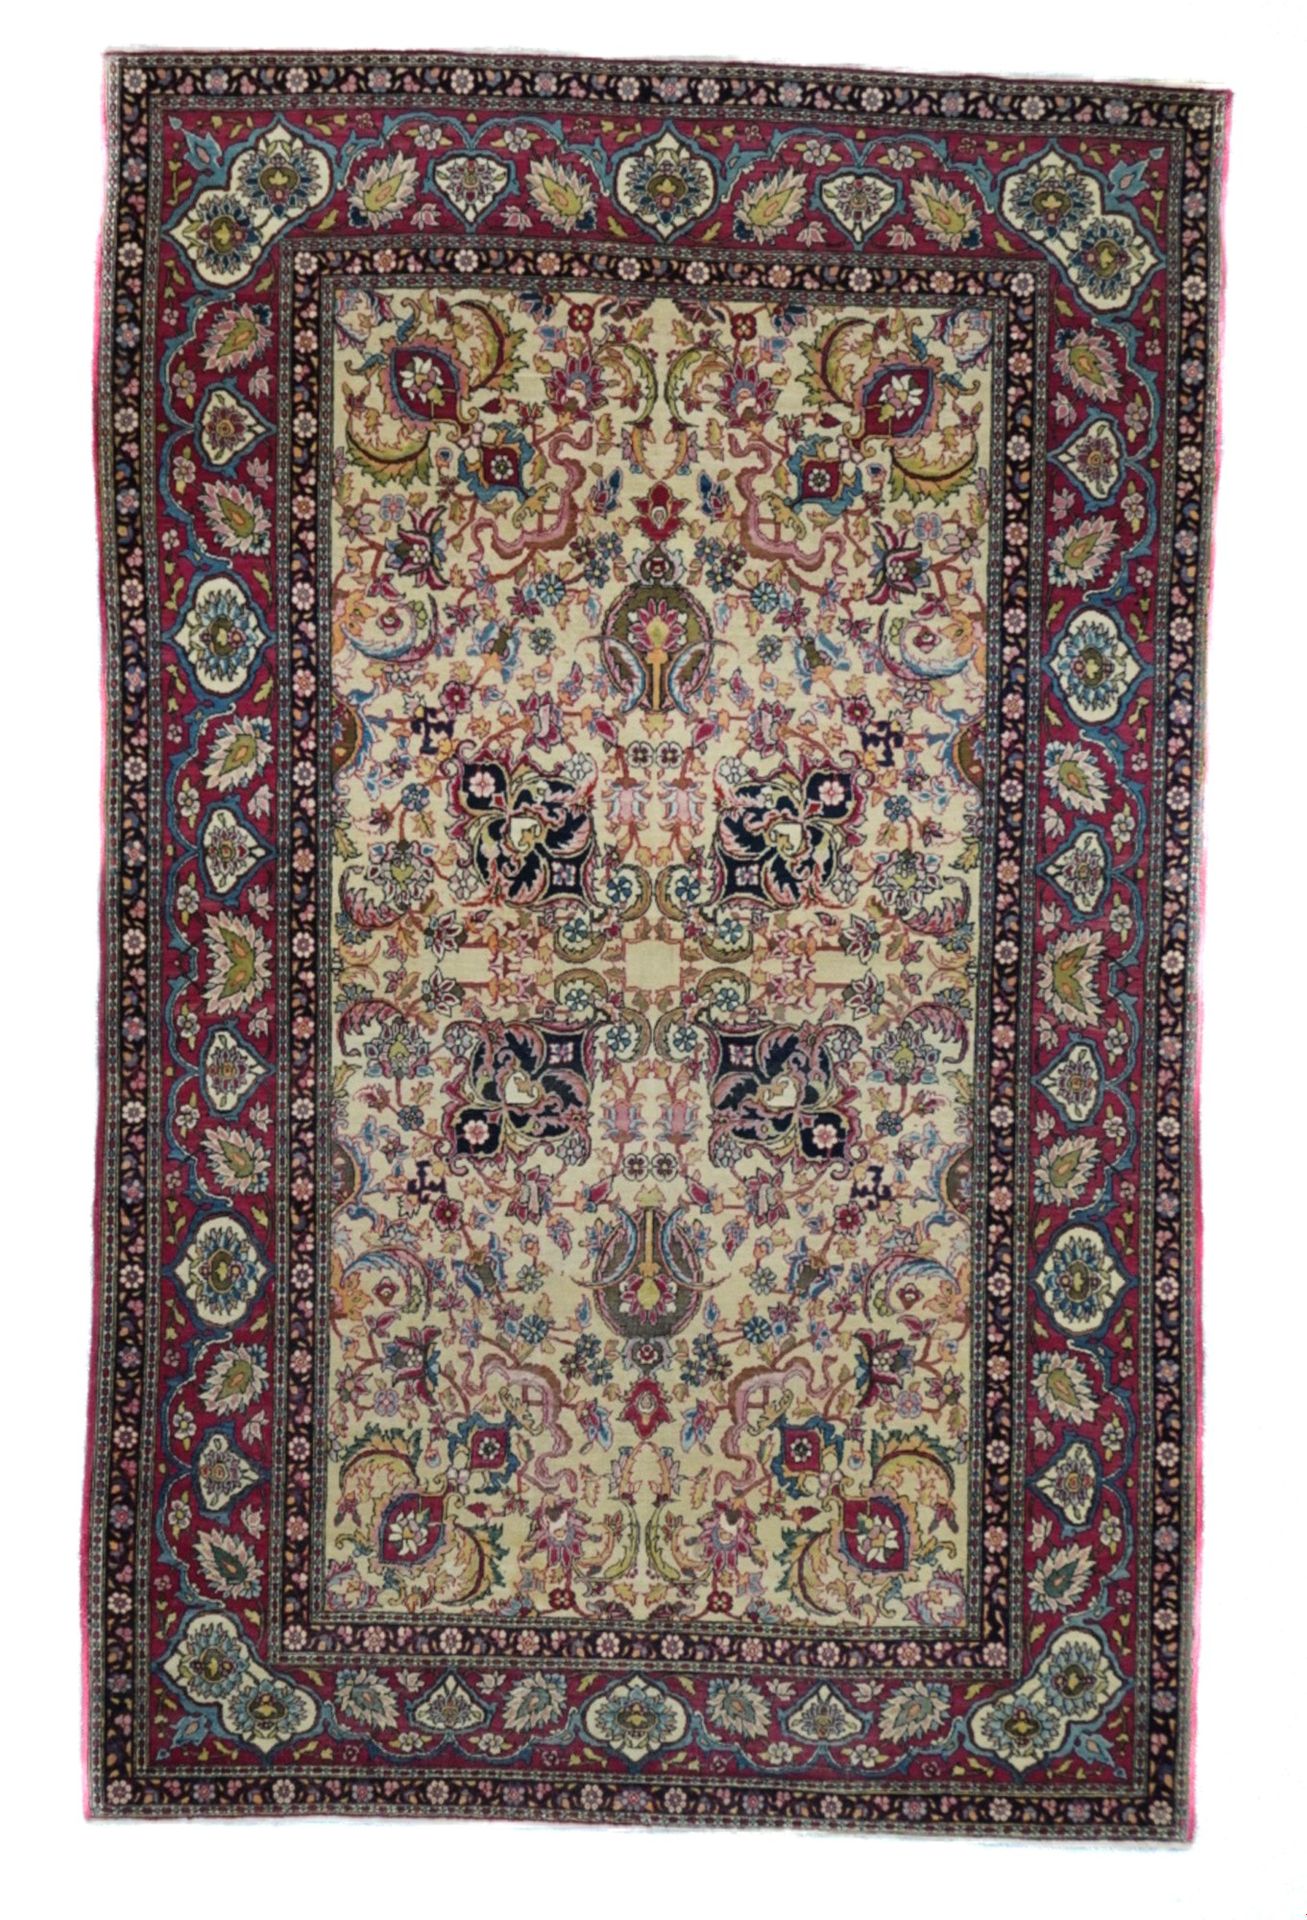 Null Antique Tehran Rug, 4'7" x 7'3" ( 1.40 x 2.21 M )